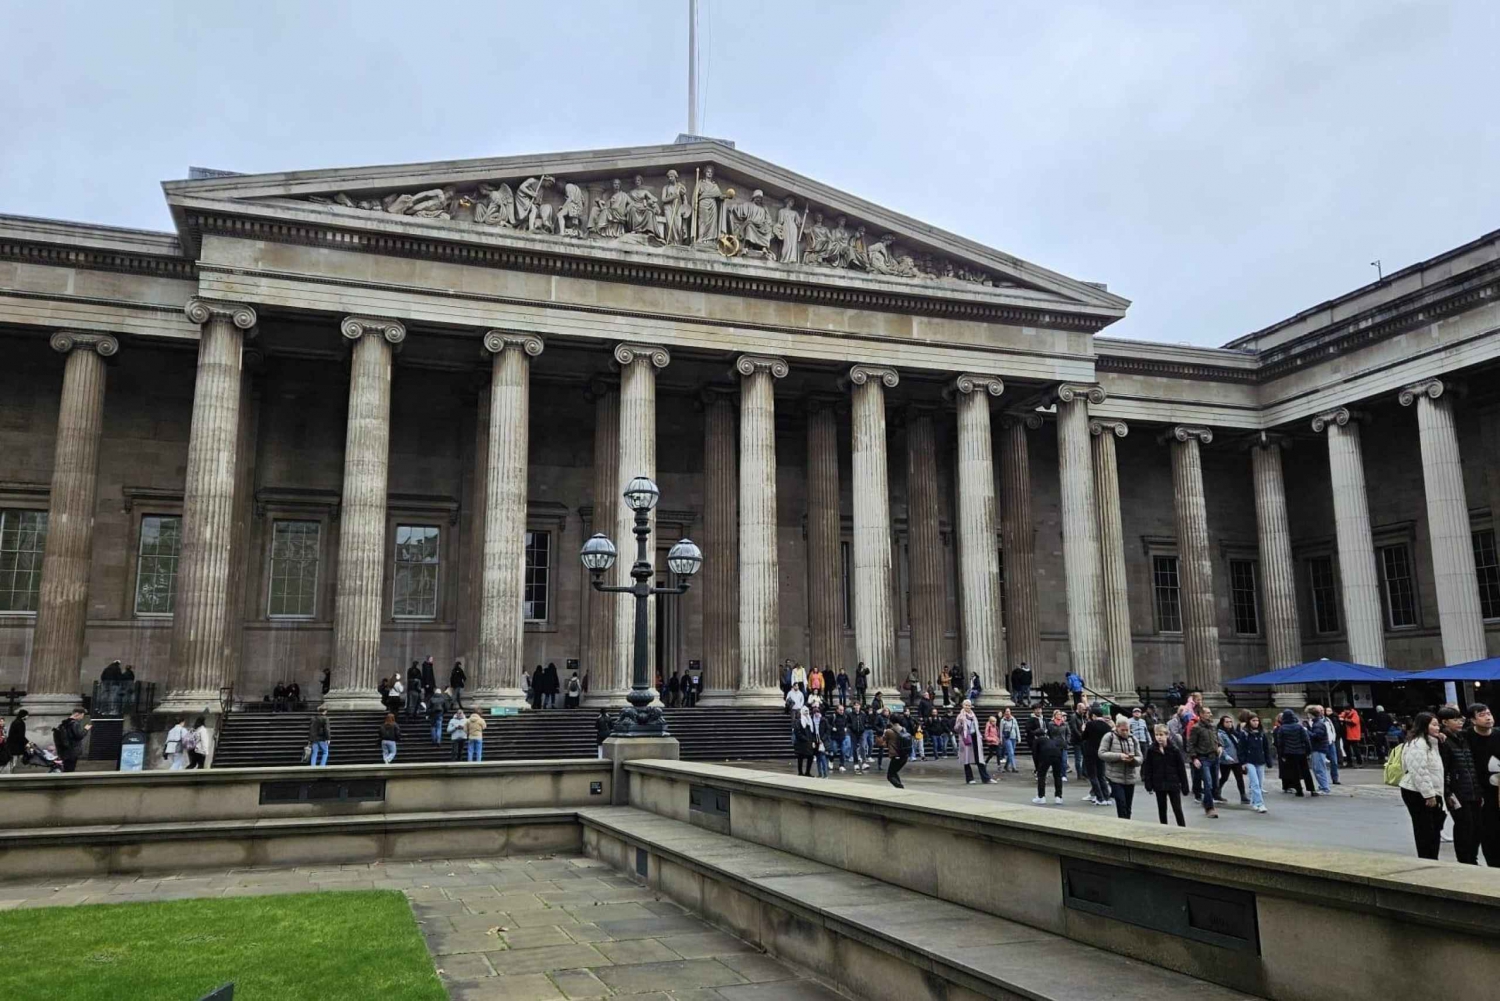 Accesso anticipato al British Museum Trafalgar Square e Covent Garden